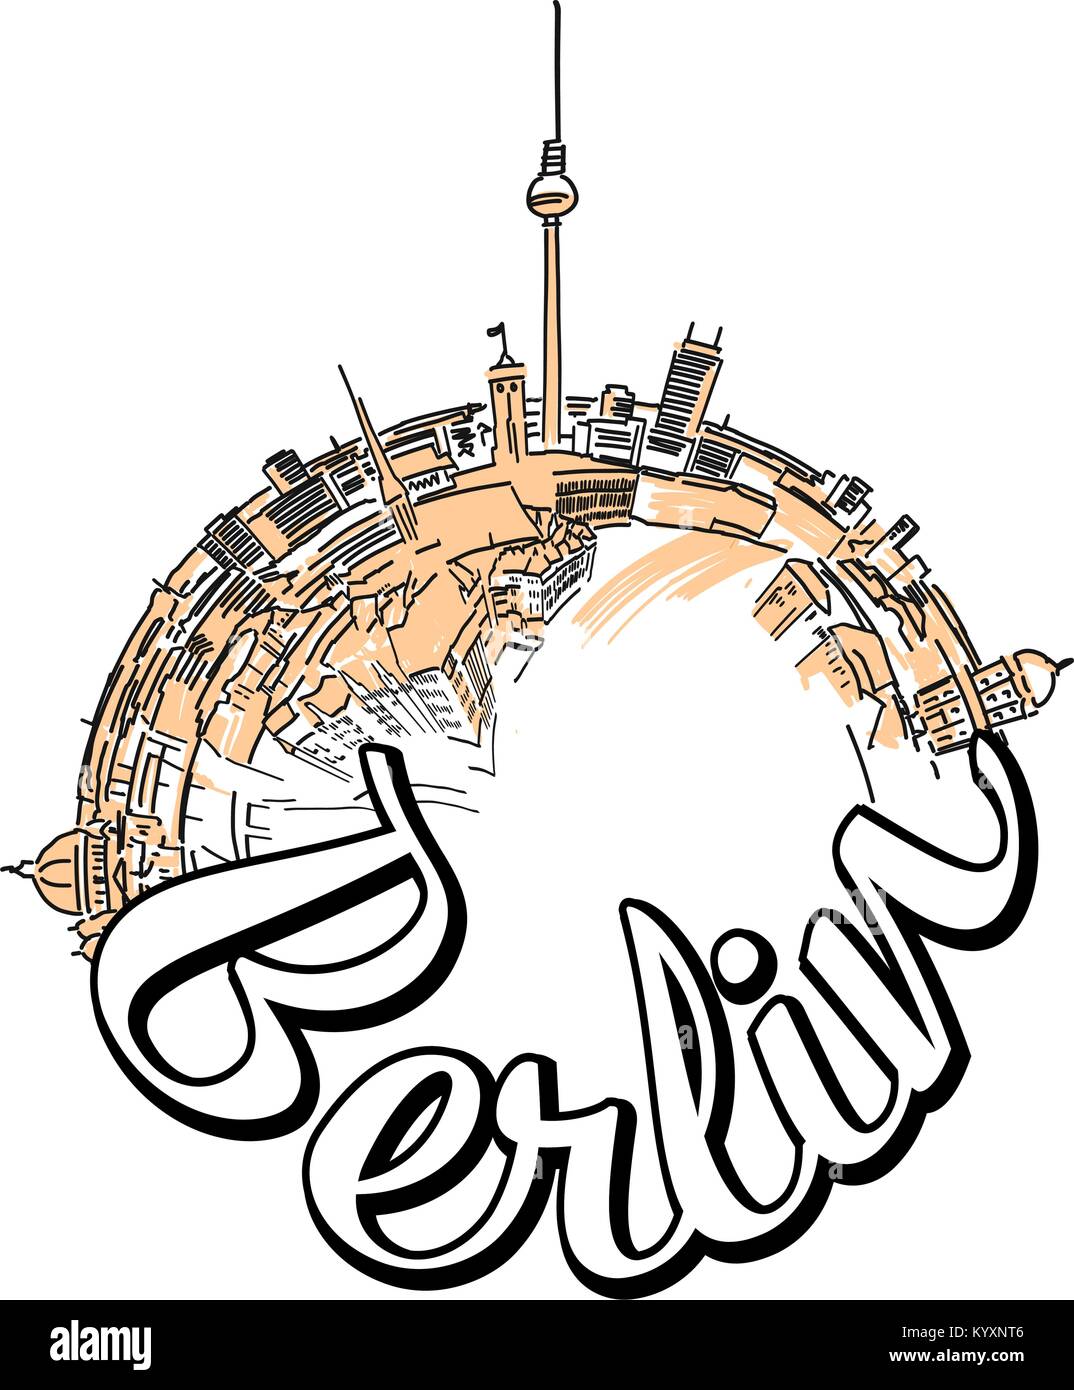 Berlino logo viaggio concept design. Skyline illustrazione vettoriale con acquarello e sullo sfondo di un refuso. Illustrazione Vettoriale